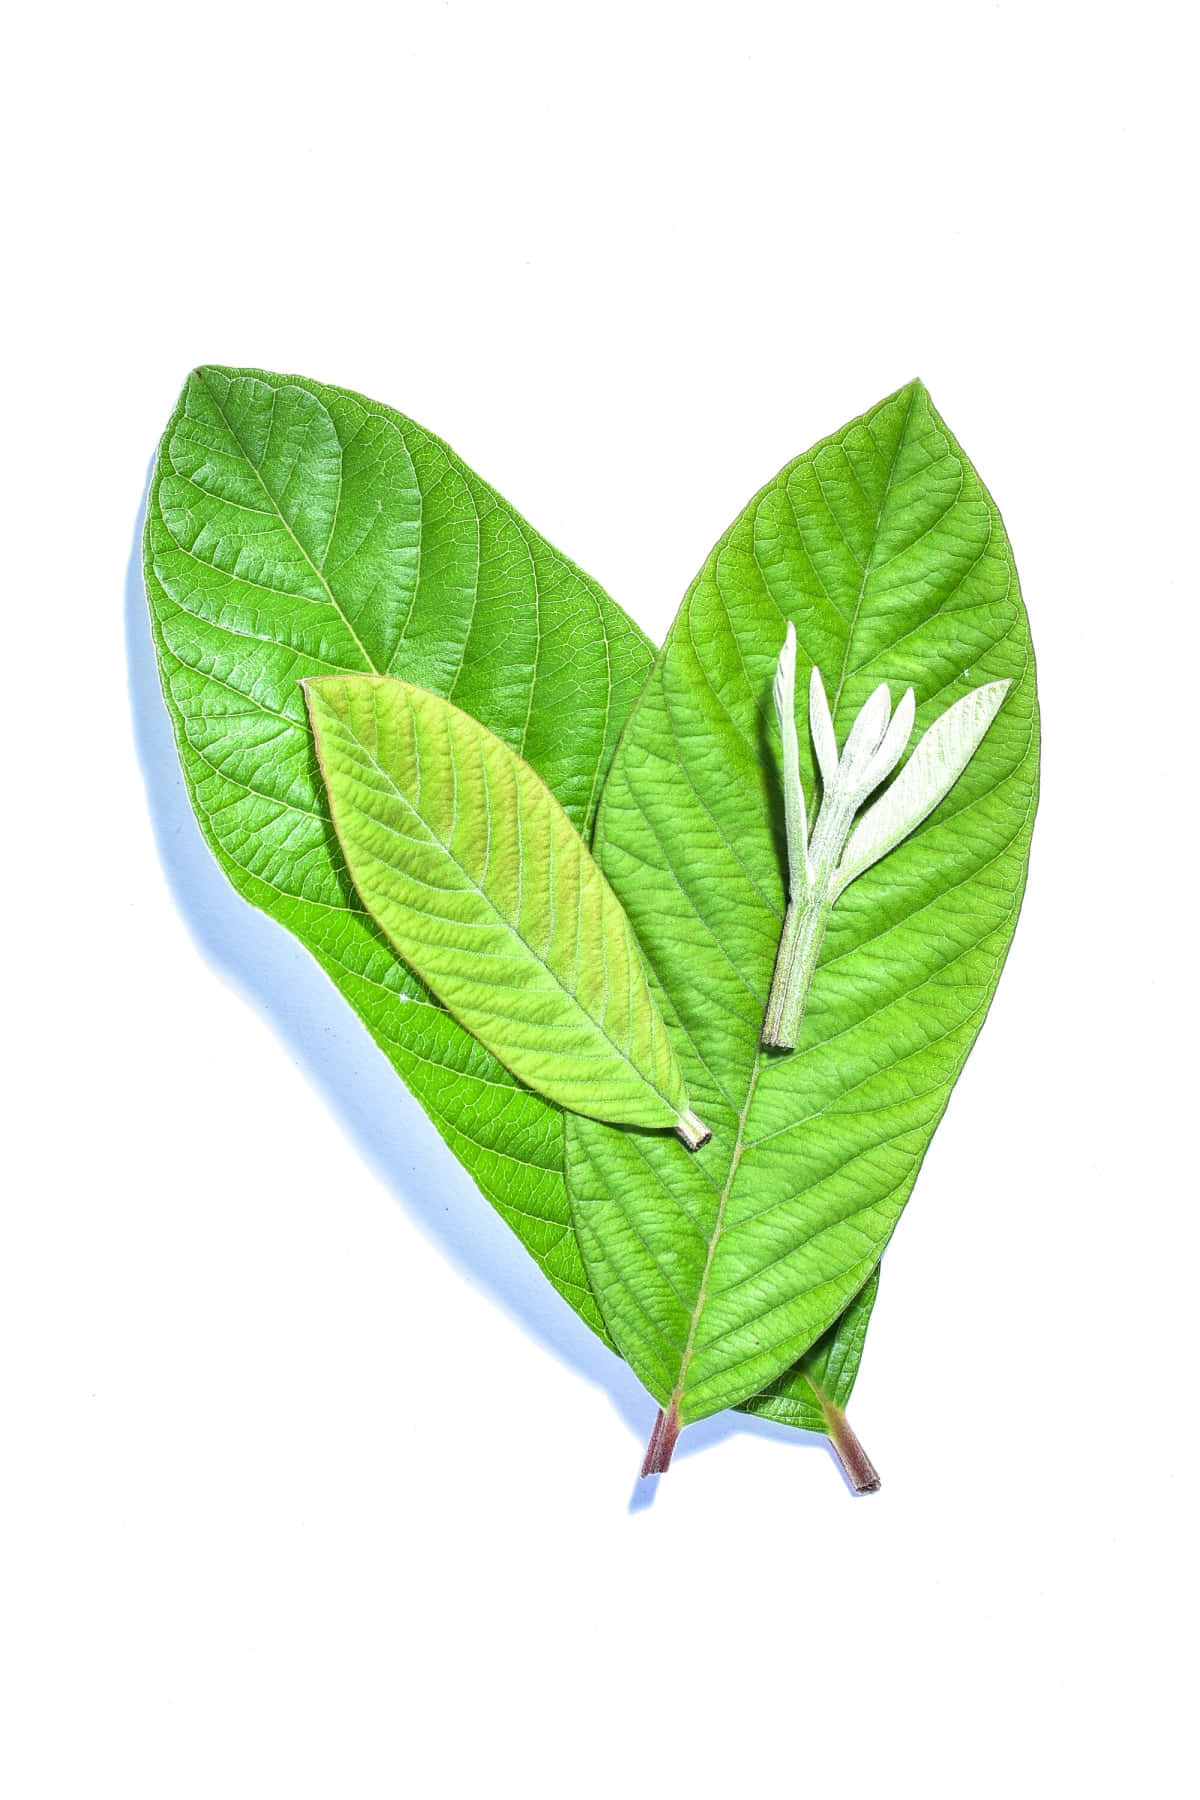 Green leaf витамины. Листья гуавы. Органический листик на белом фоне.